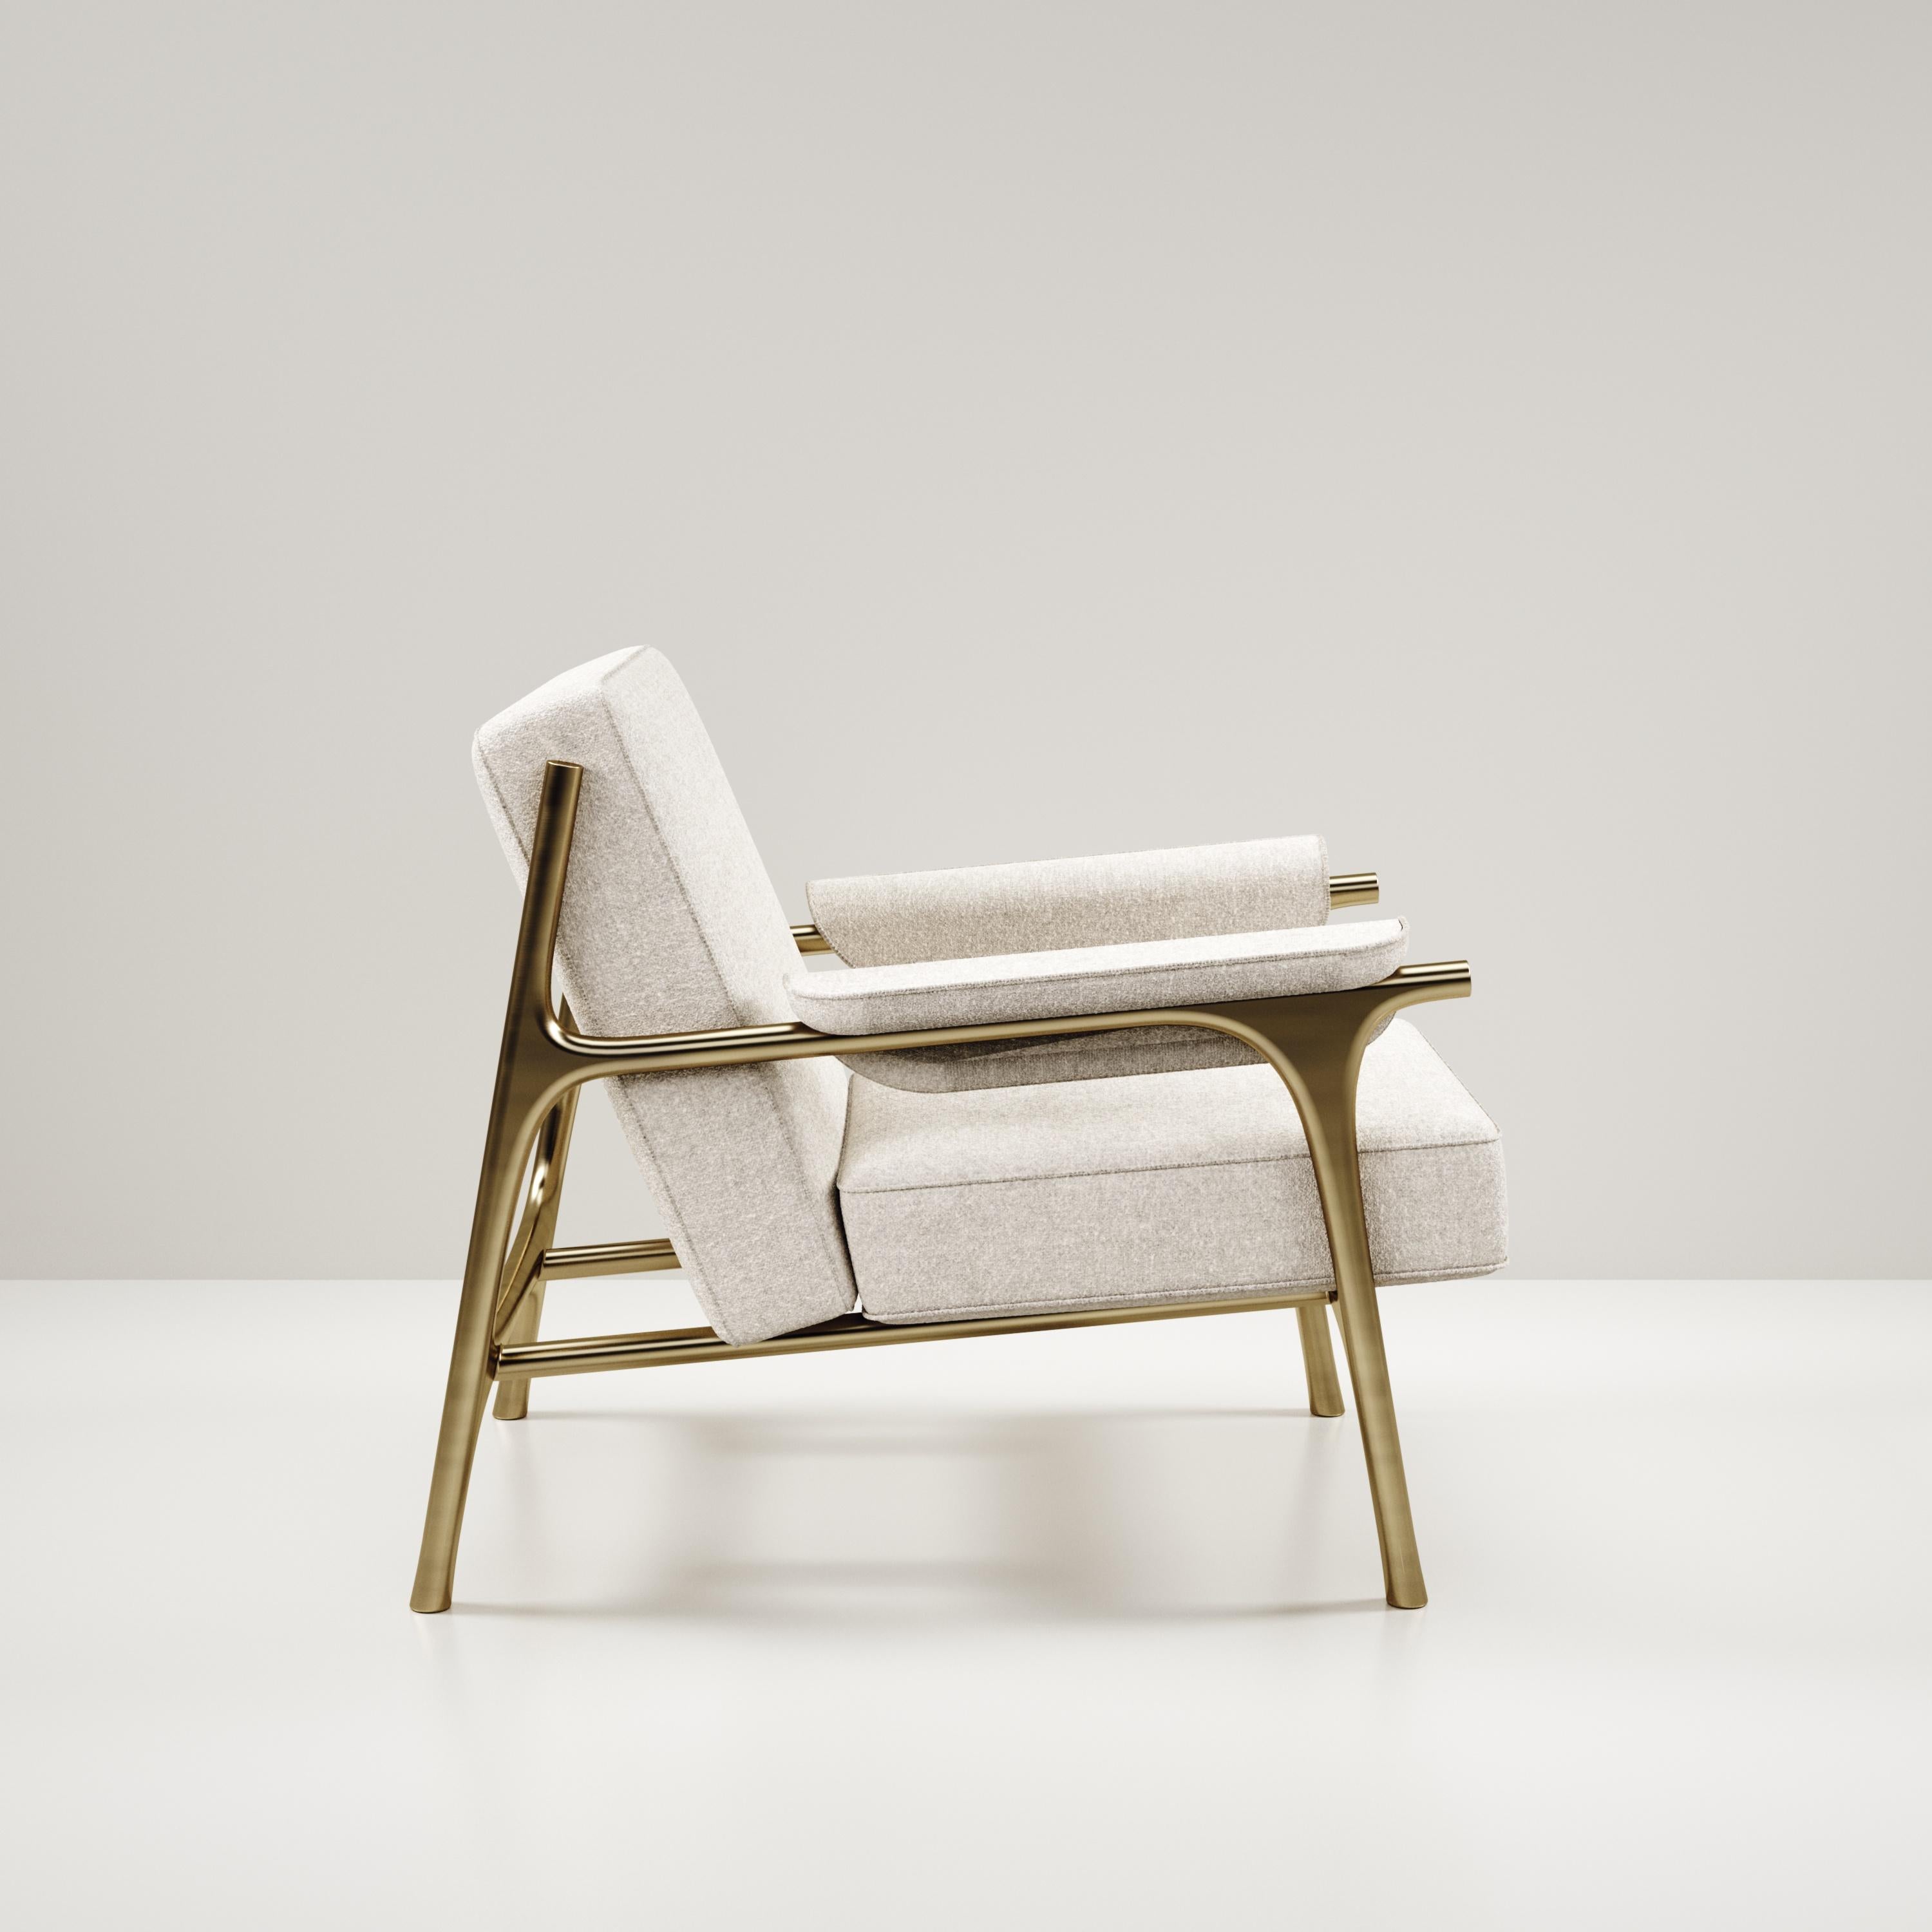 Le fauteuil Ramo de R & Y Augousti est une pièce élégante et polyvalente. La pièce rembourrée en tissu Pierre Frey crème offre un grand confort tout en conservant une esthétique unique avec le cadre et les détails en laiton bronze-patiné. Le prix de